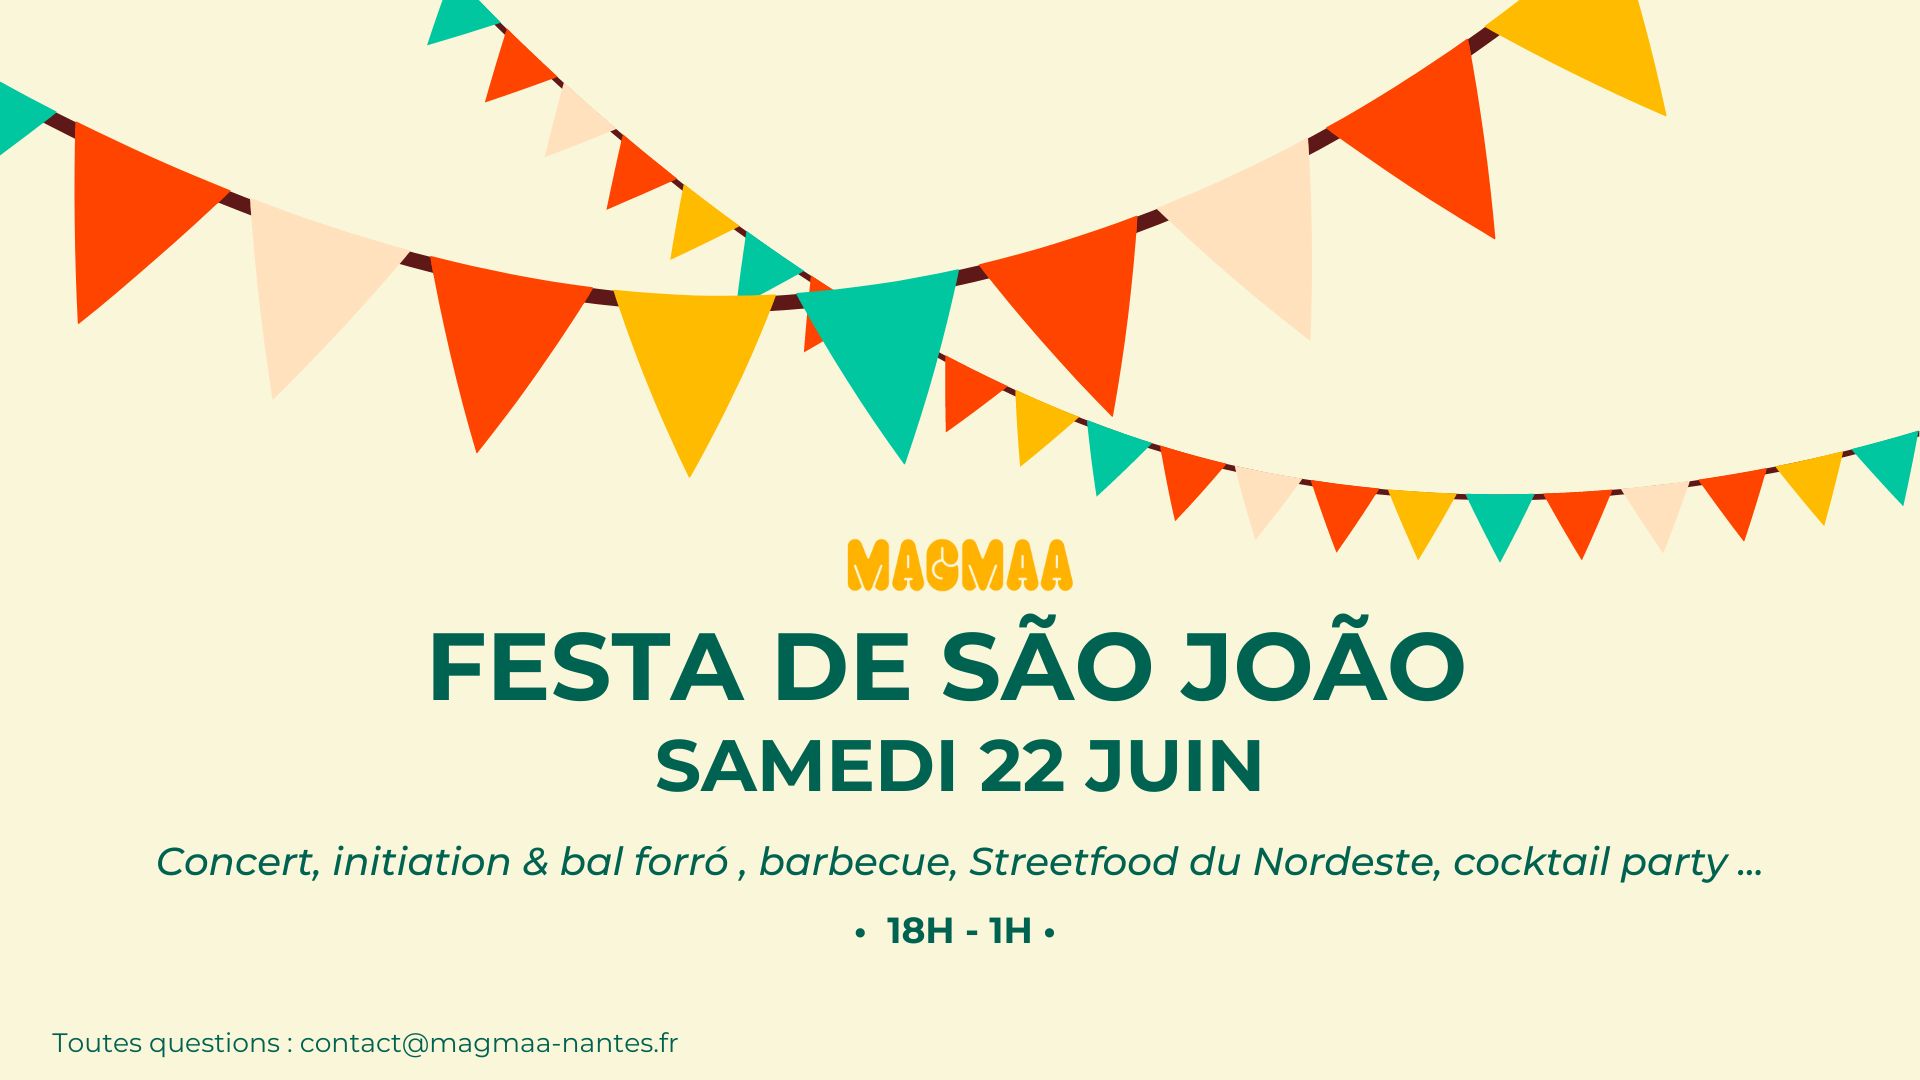 Magmaa Festa De Sao Joao 